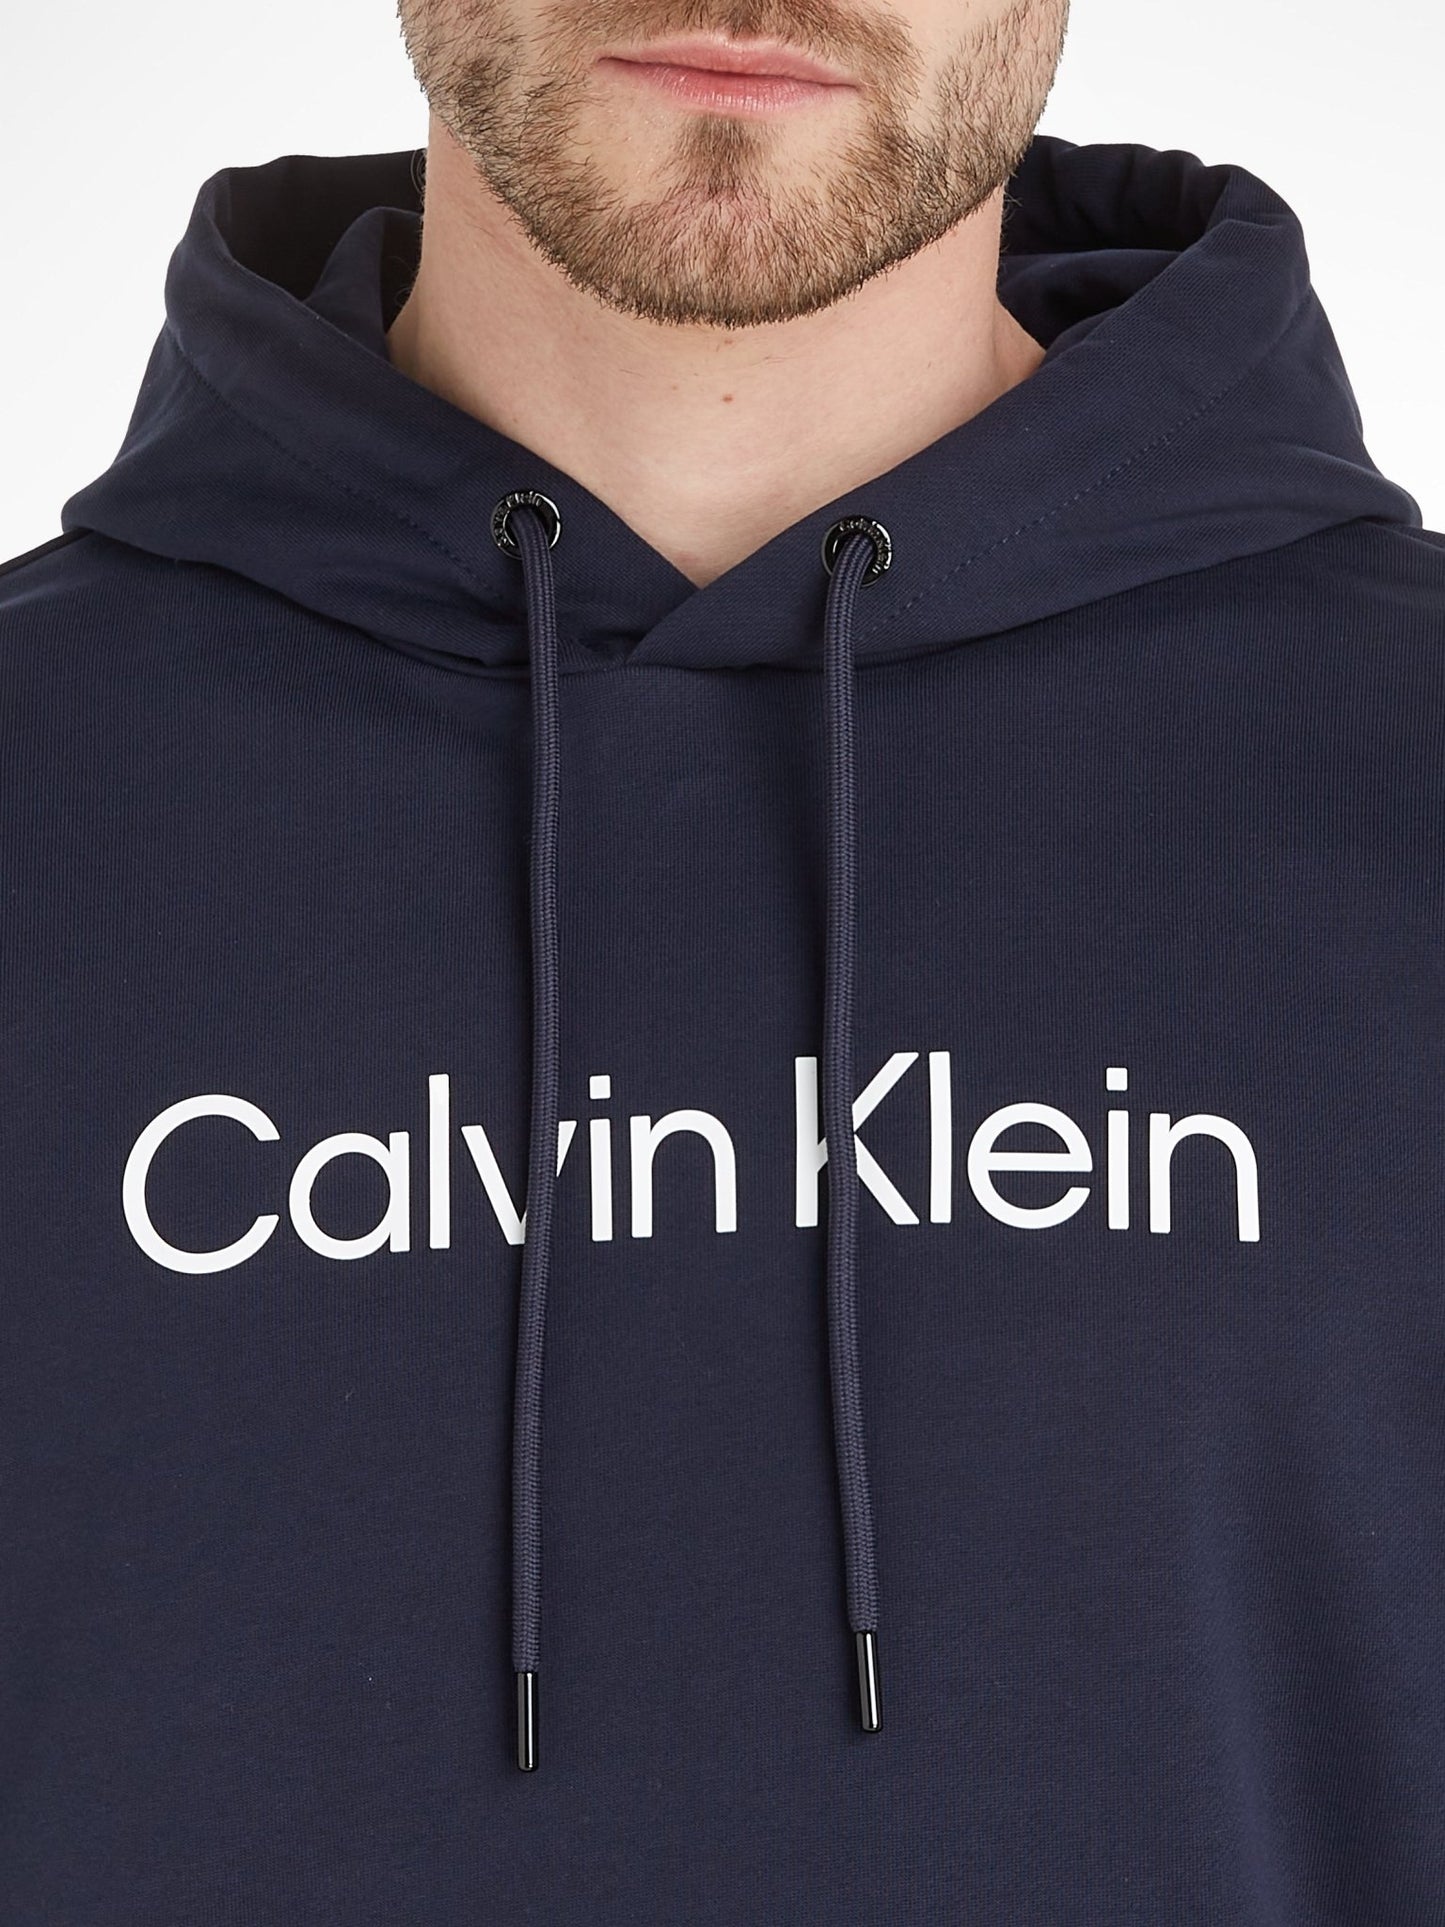 Calvin Klein Logo Hoodie - Matt O'Brien Fashions